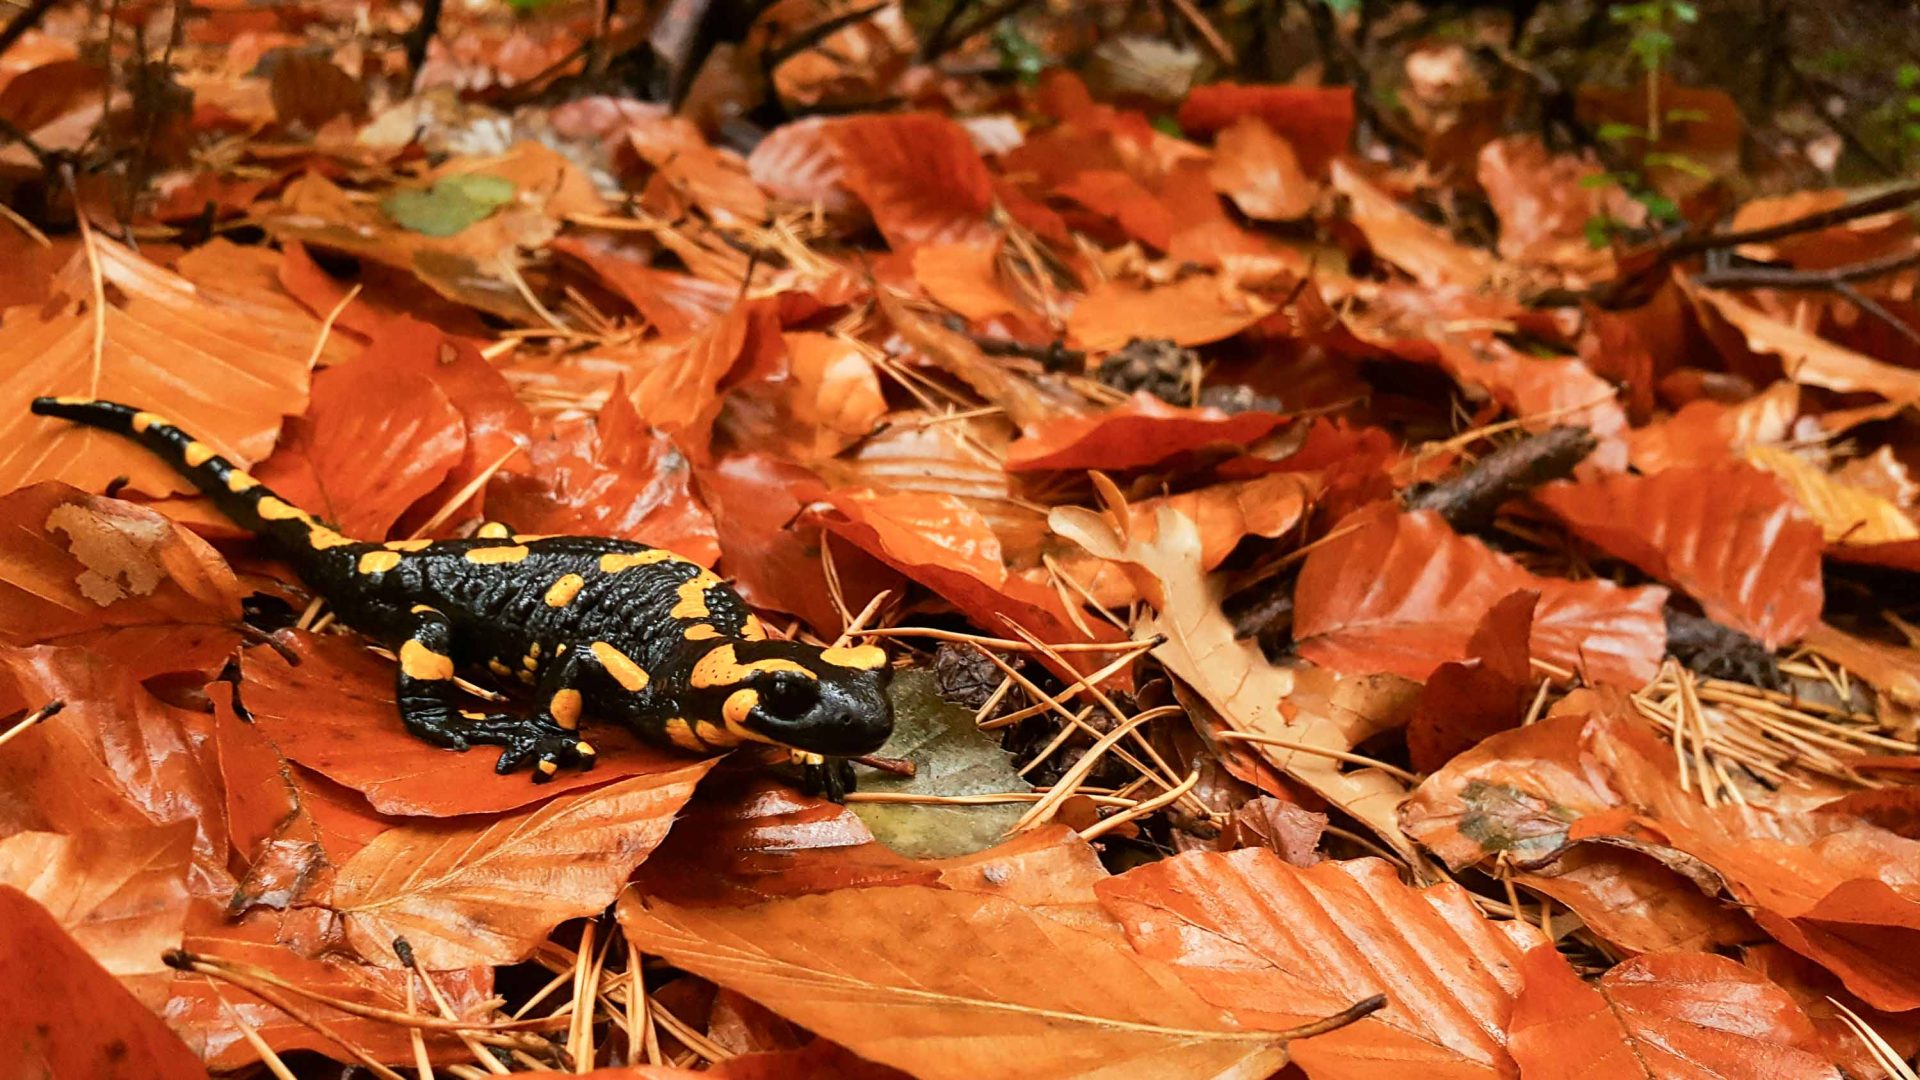 A salamander in amongst brown leaves.